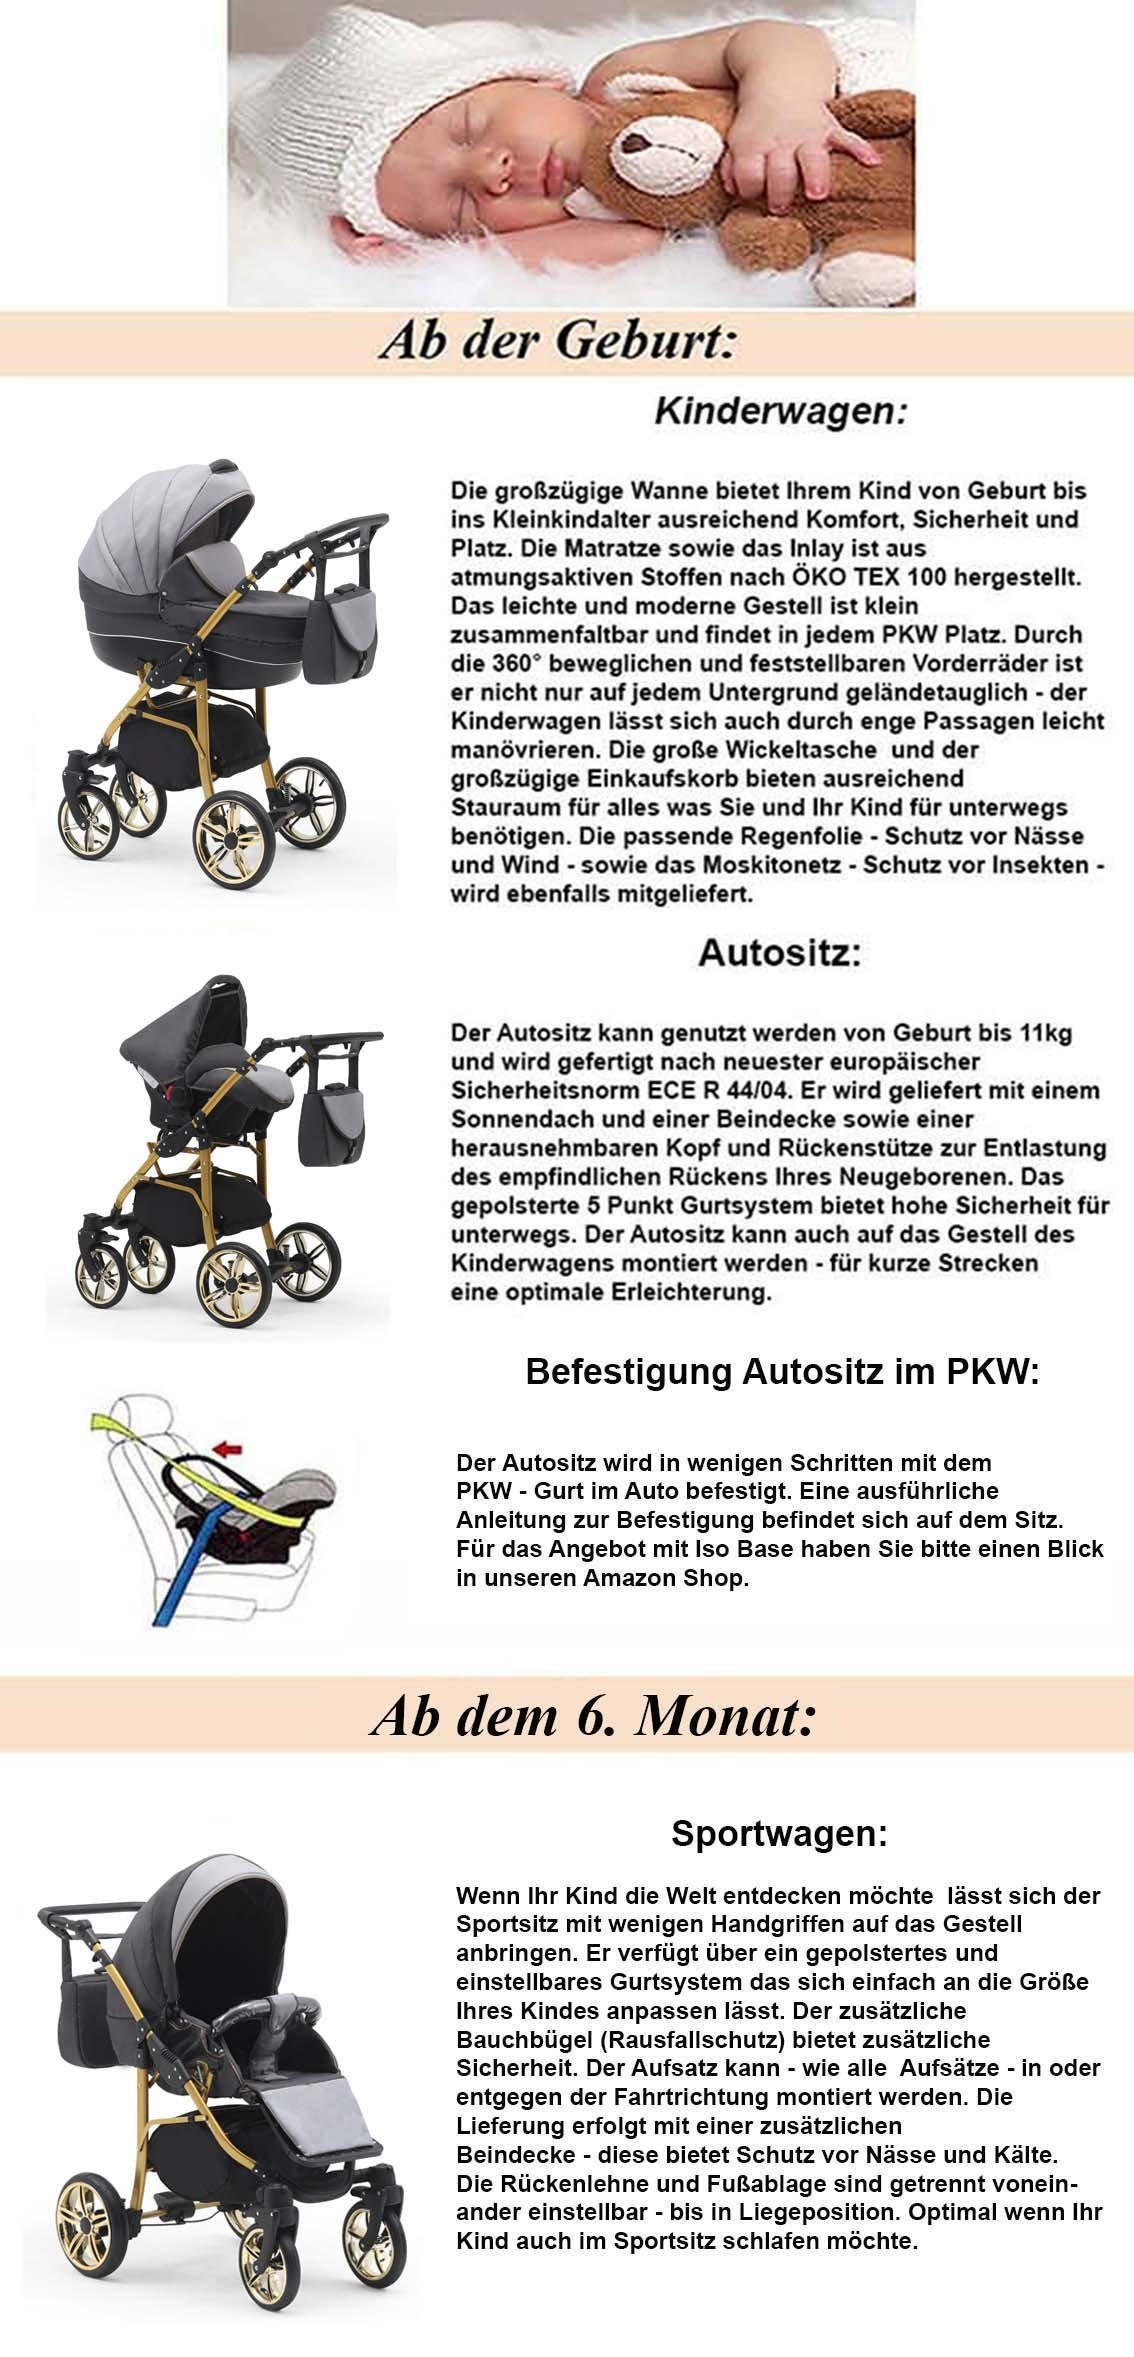 babies-on-wheels Kombi-Kinderwagen 16 - 3 in Farben Gold- Kinderwagen-Set Teile Creme-Beige-Weiß in 1 46 Cosmo